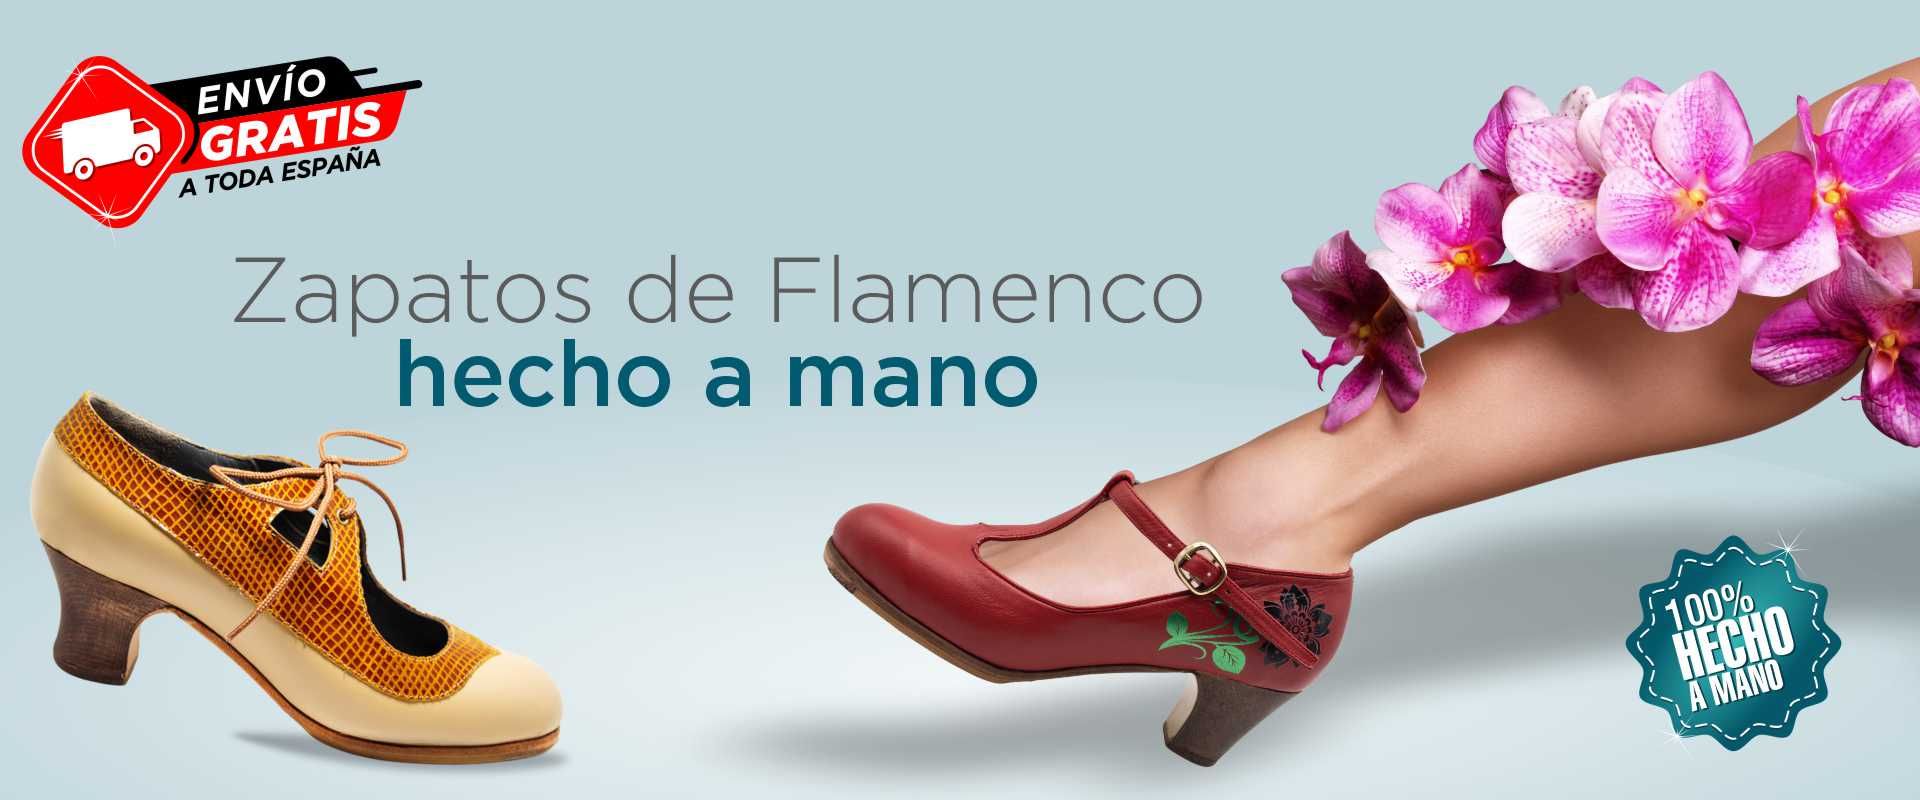 Estándar Continuamente Directamente Tienda online especializada en la fabricación artesanal y venta de zapatos  para el baile flamenco, amplio y permanete stock de calzado flamenco, envío  de stock en 24h a cualquier destino, recibe tu